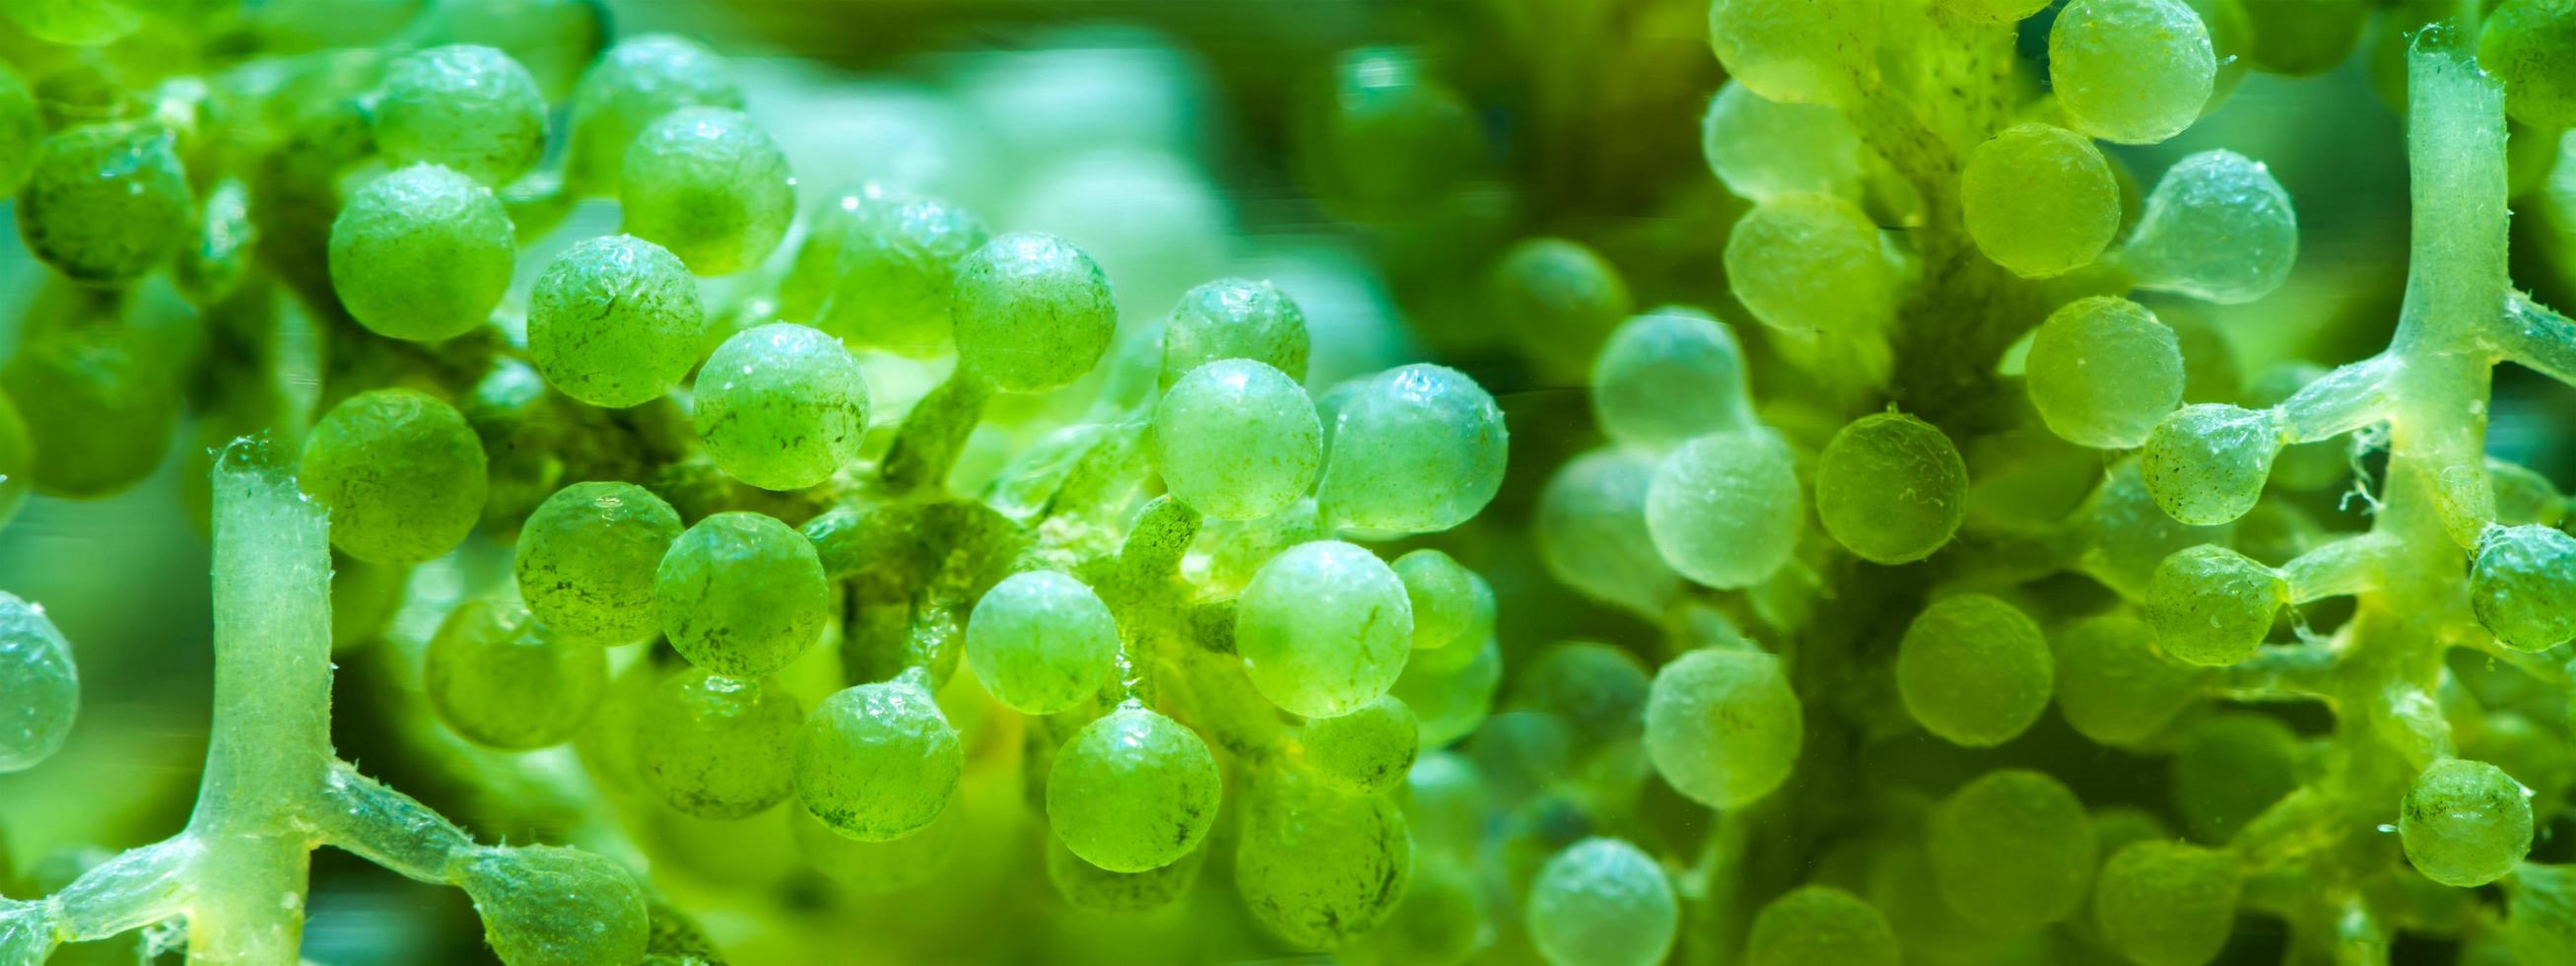 abstrakter texturhintergrund von algen in supermakroaufnahme, nahaufnahme von grünen algen im wasser und muster von aquatischen meerespflanzen, biologie und mikrobiologieausbildung im laborkonzept foto